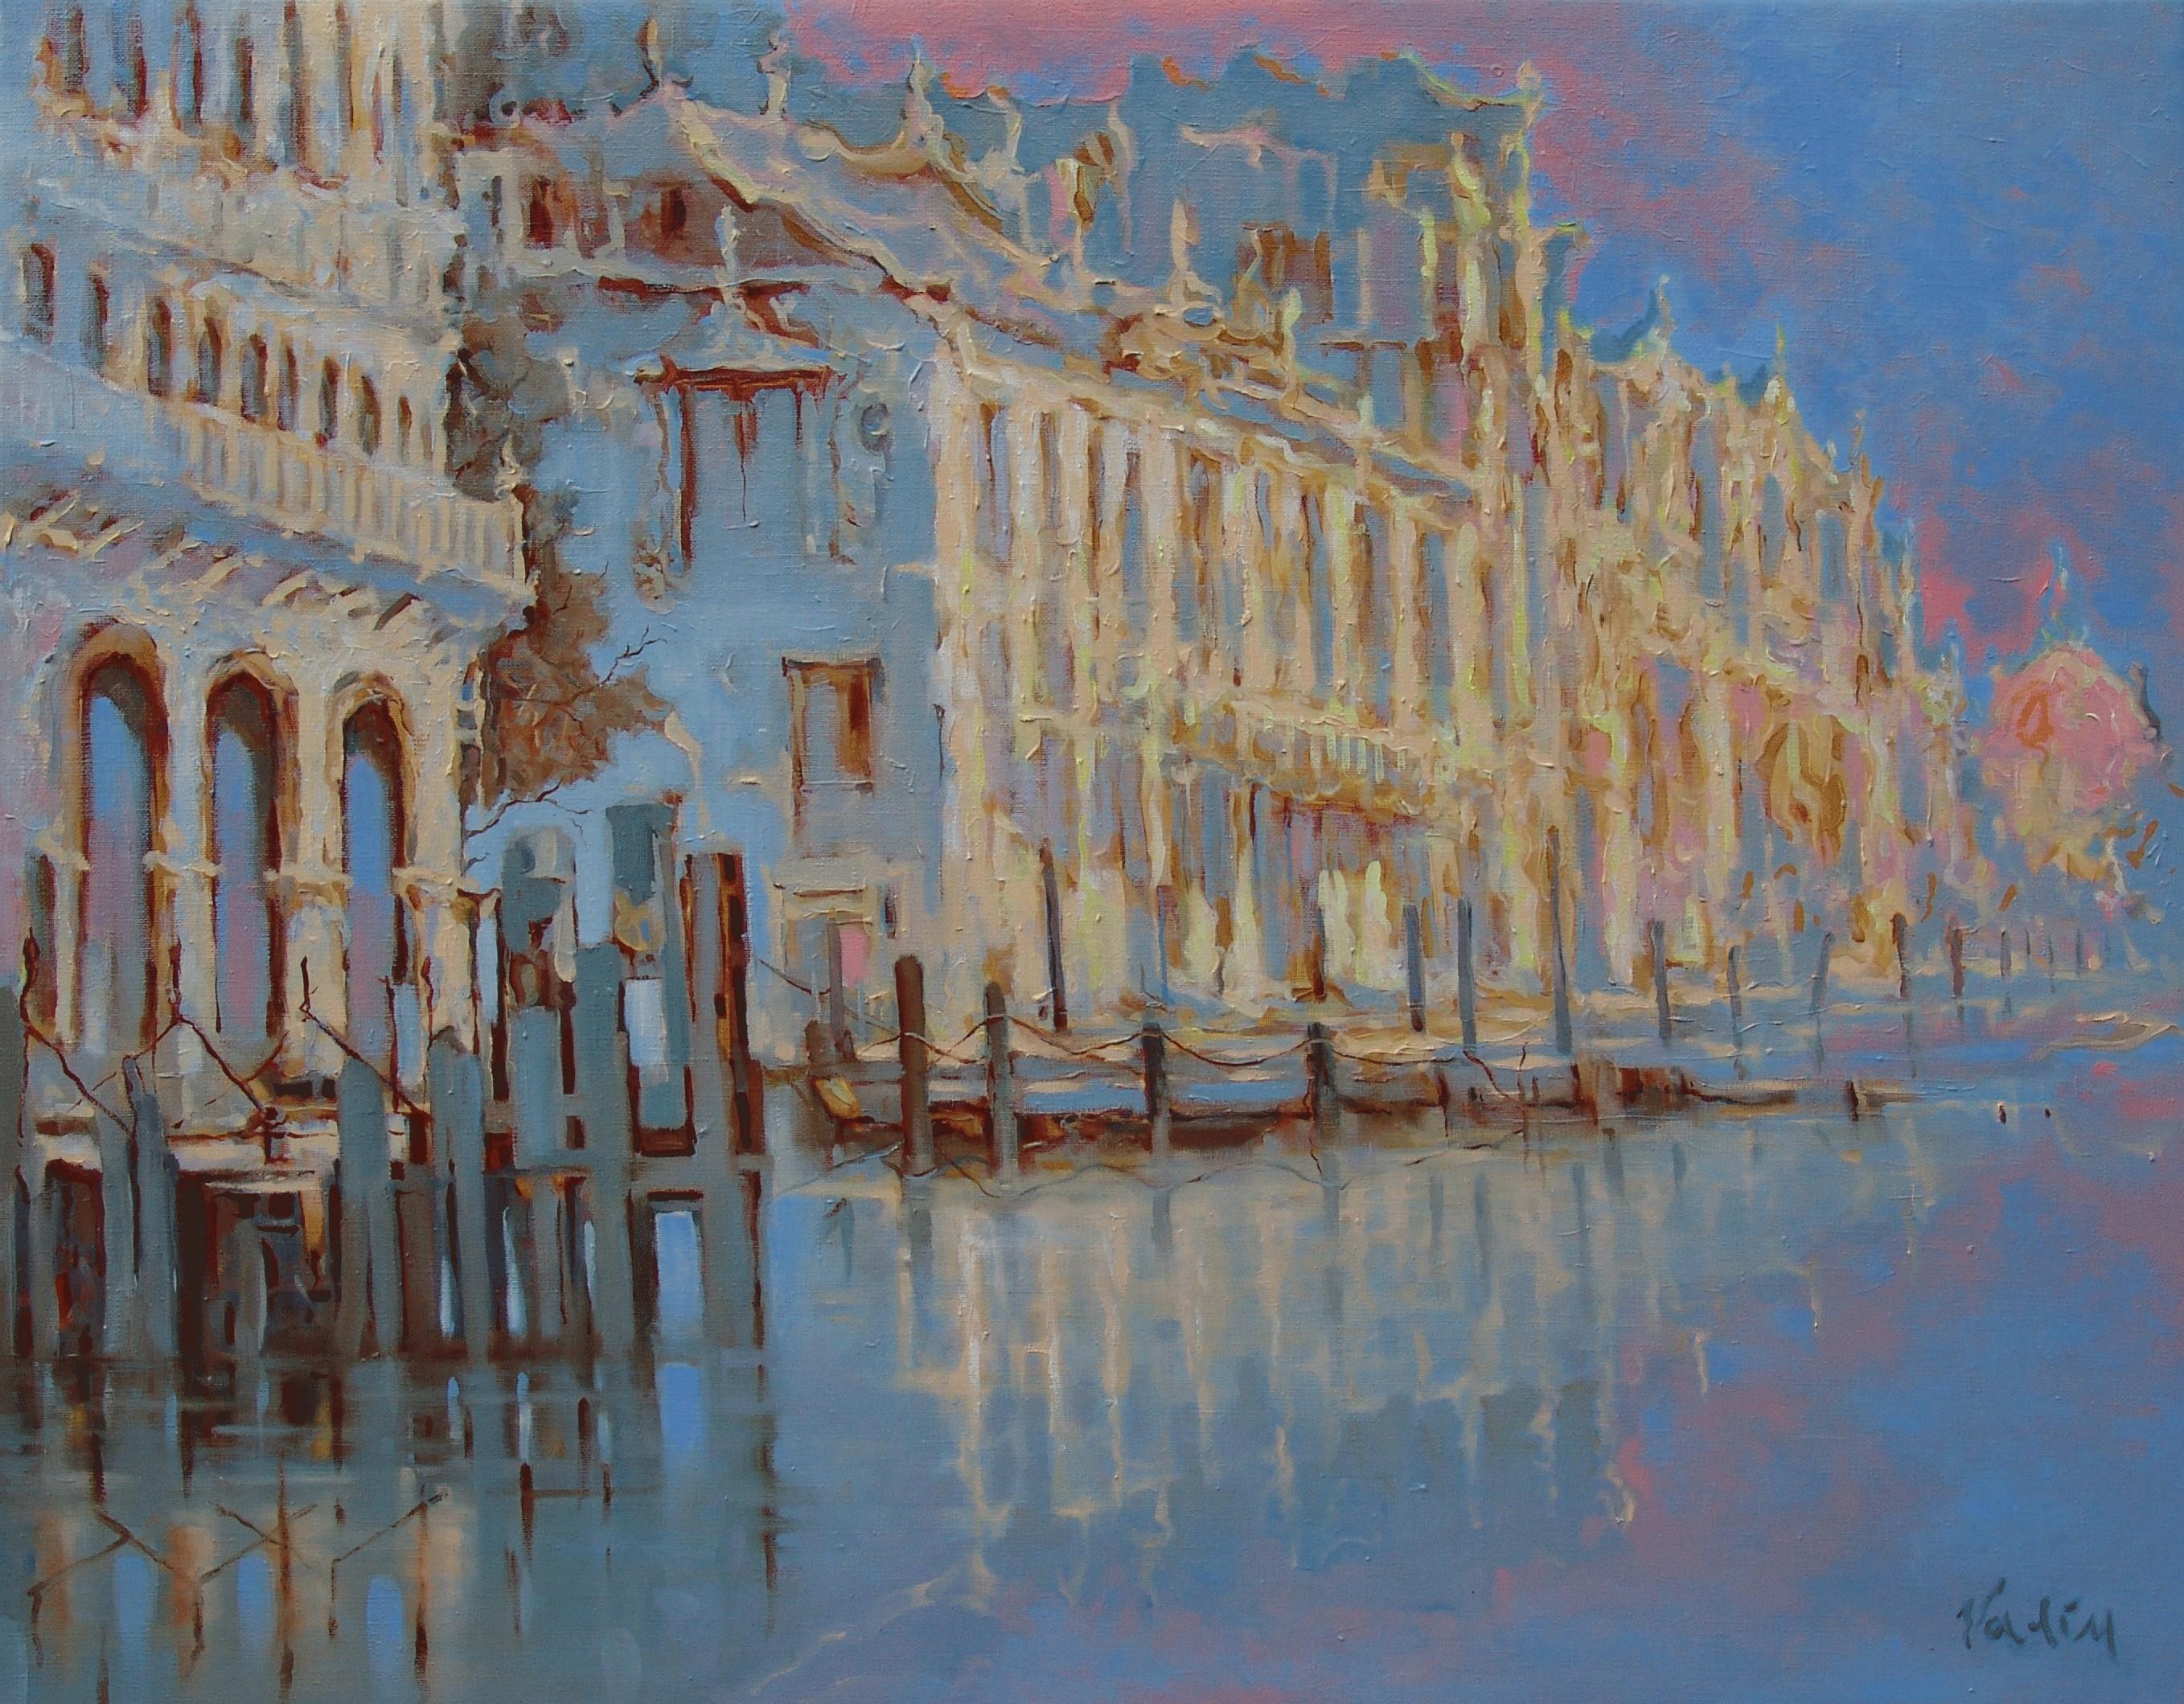 Venice. Oil on canvas, 73x93 cm